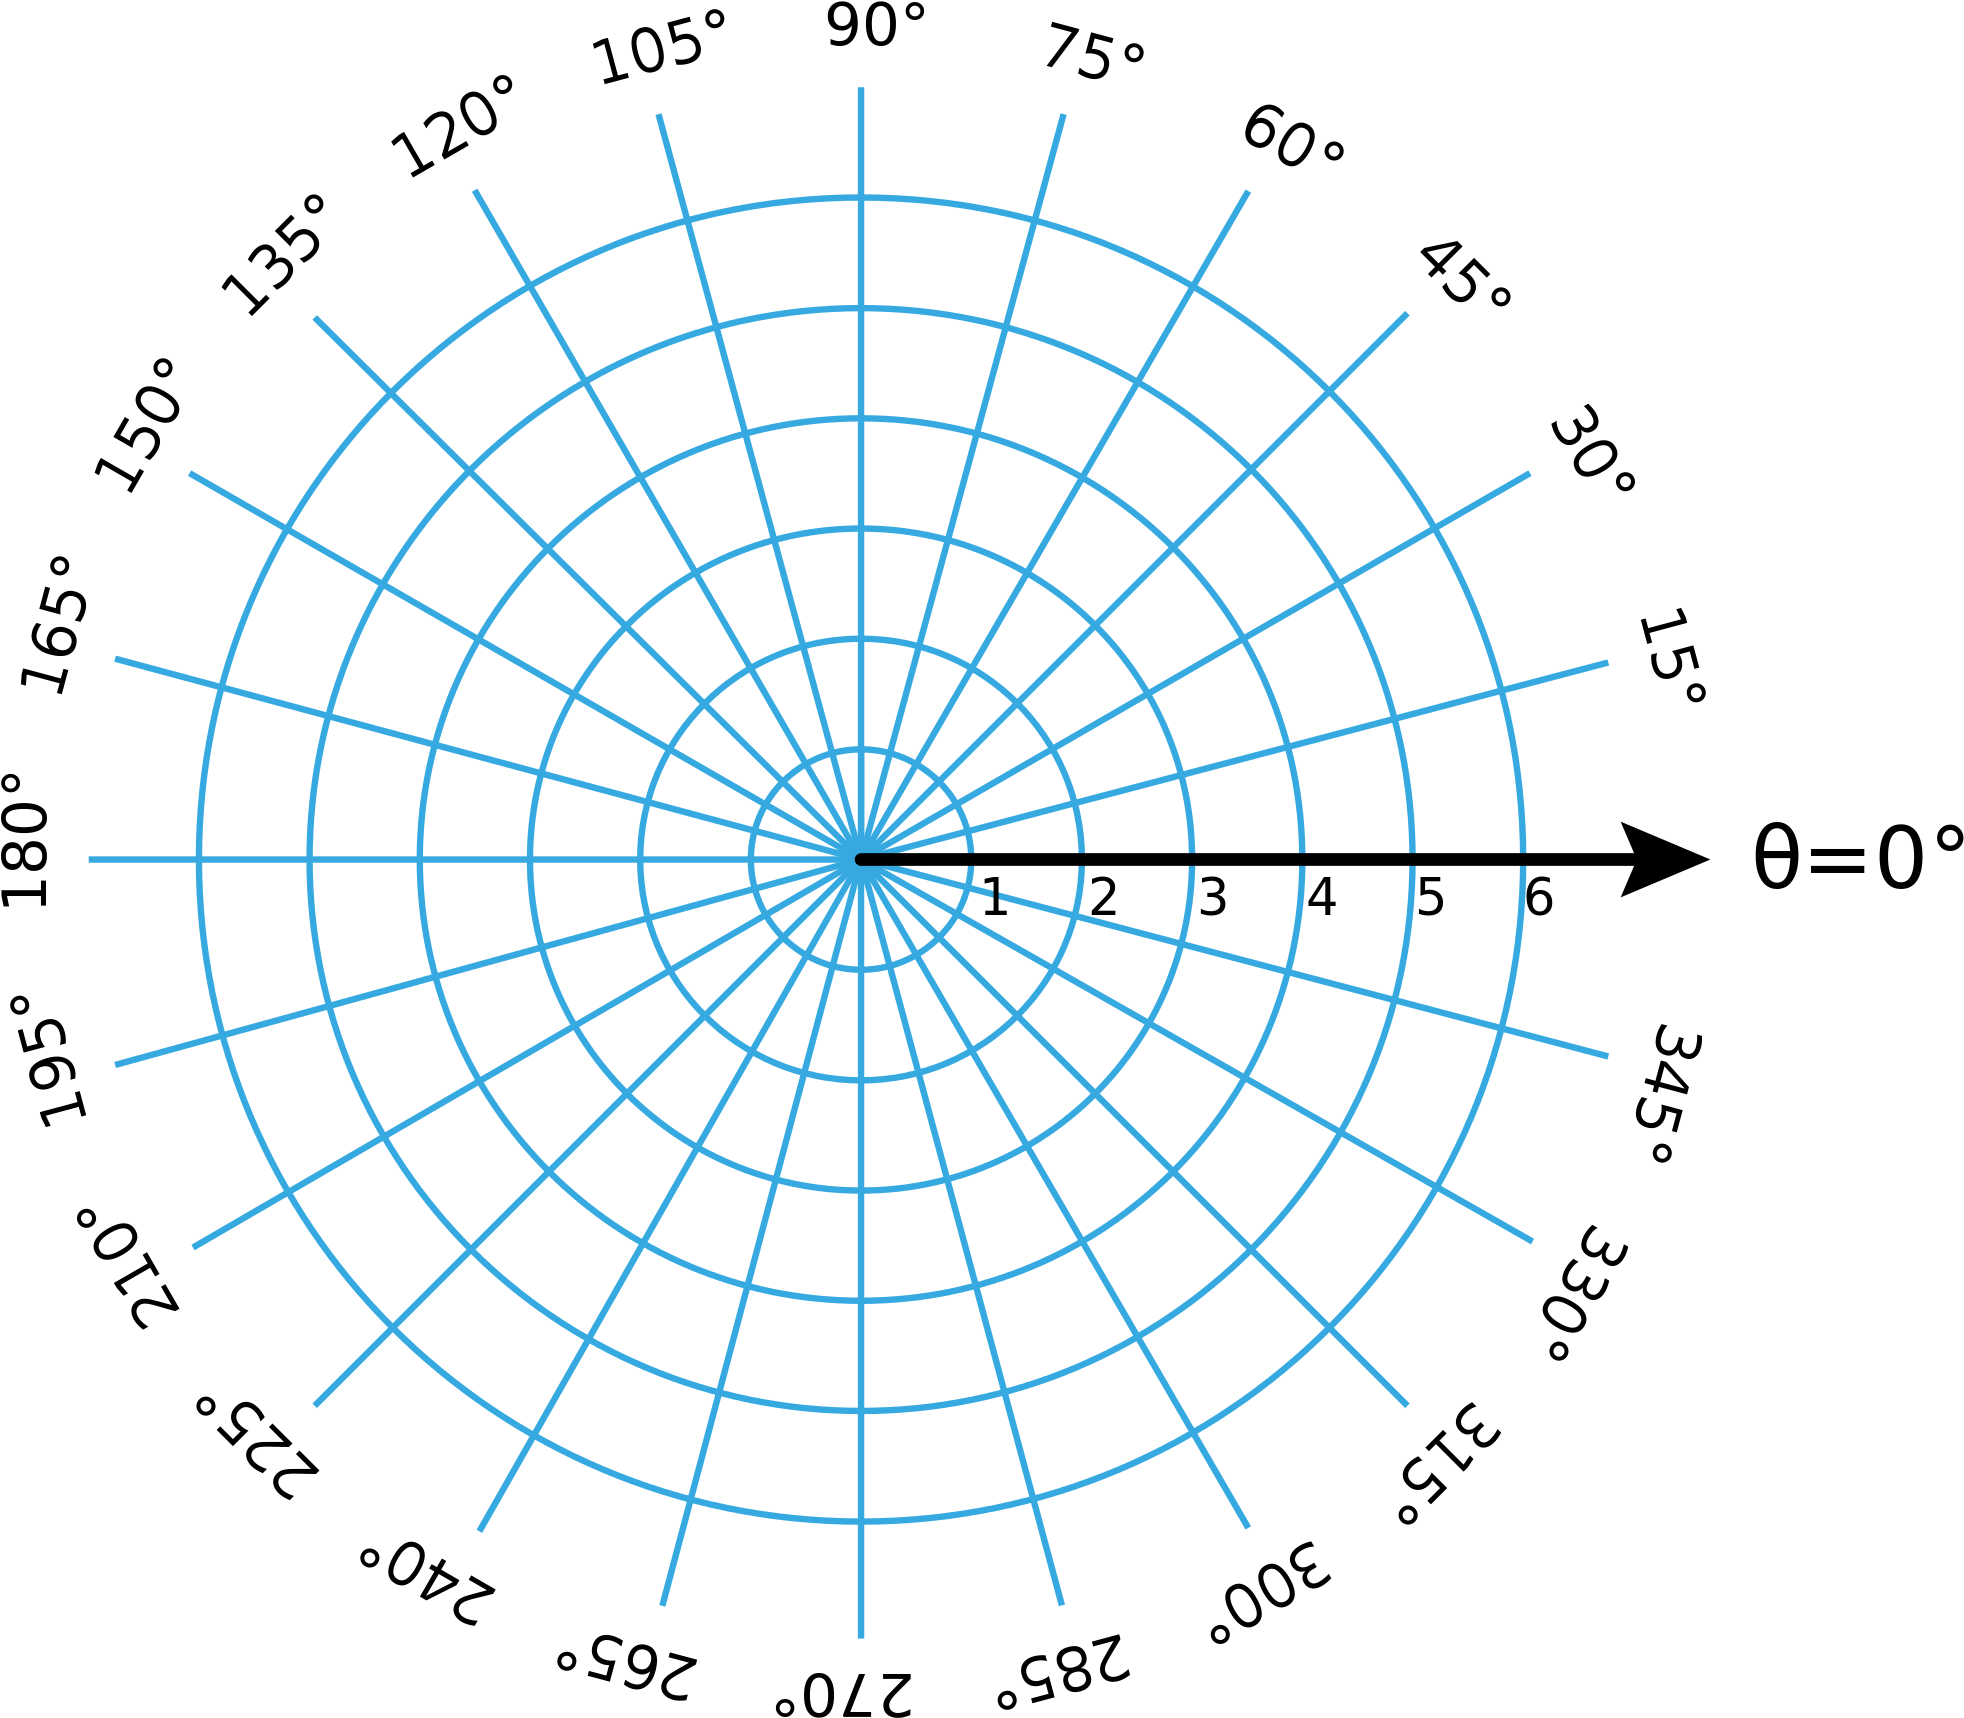 A Blue Circular Grid On A Black Background